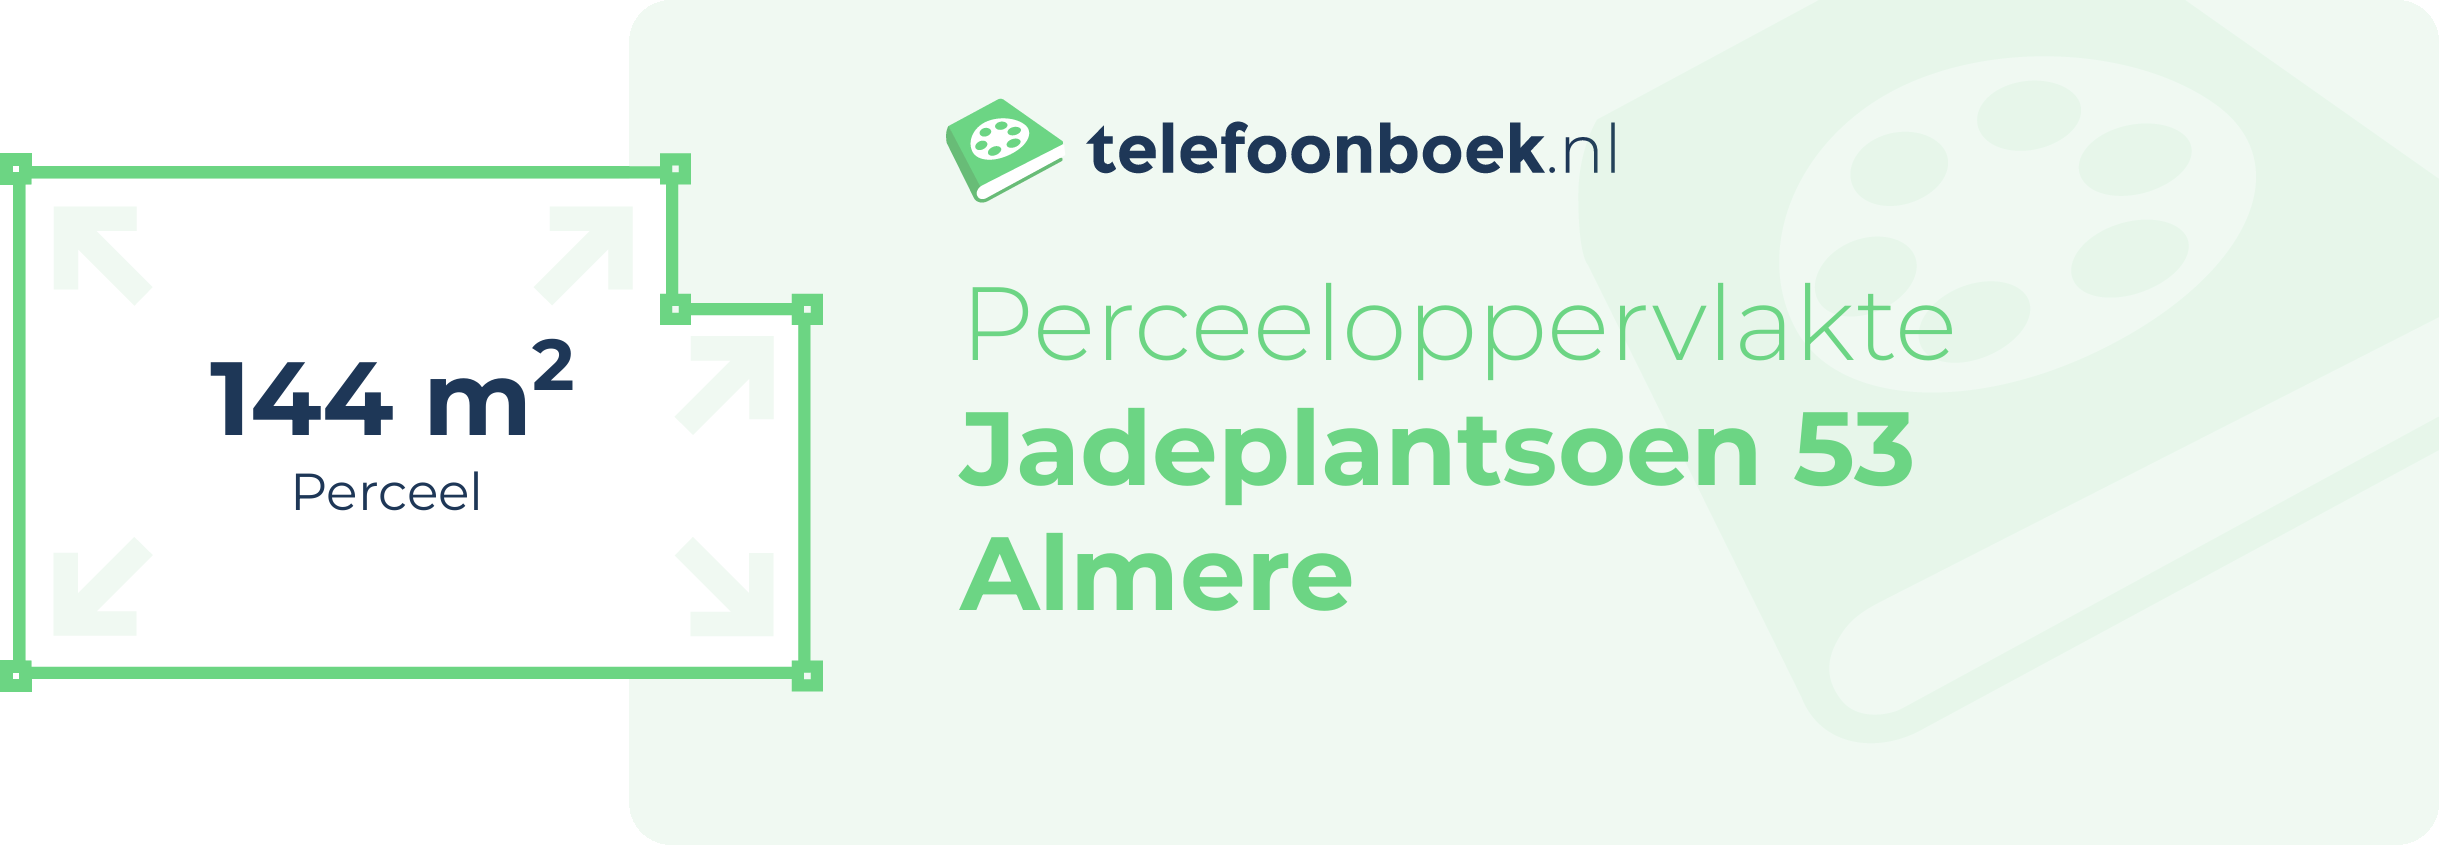 Perceeloppervlakte Jadeplantsoen 53 Almere